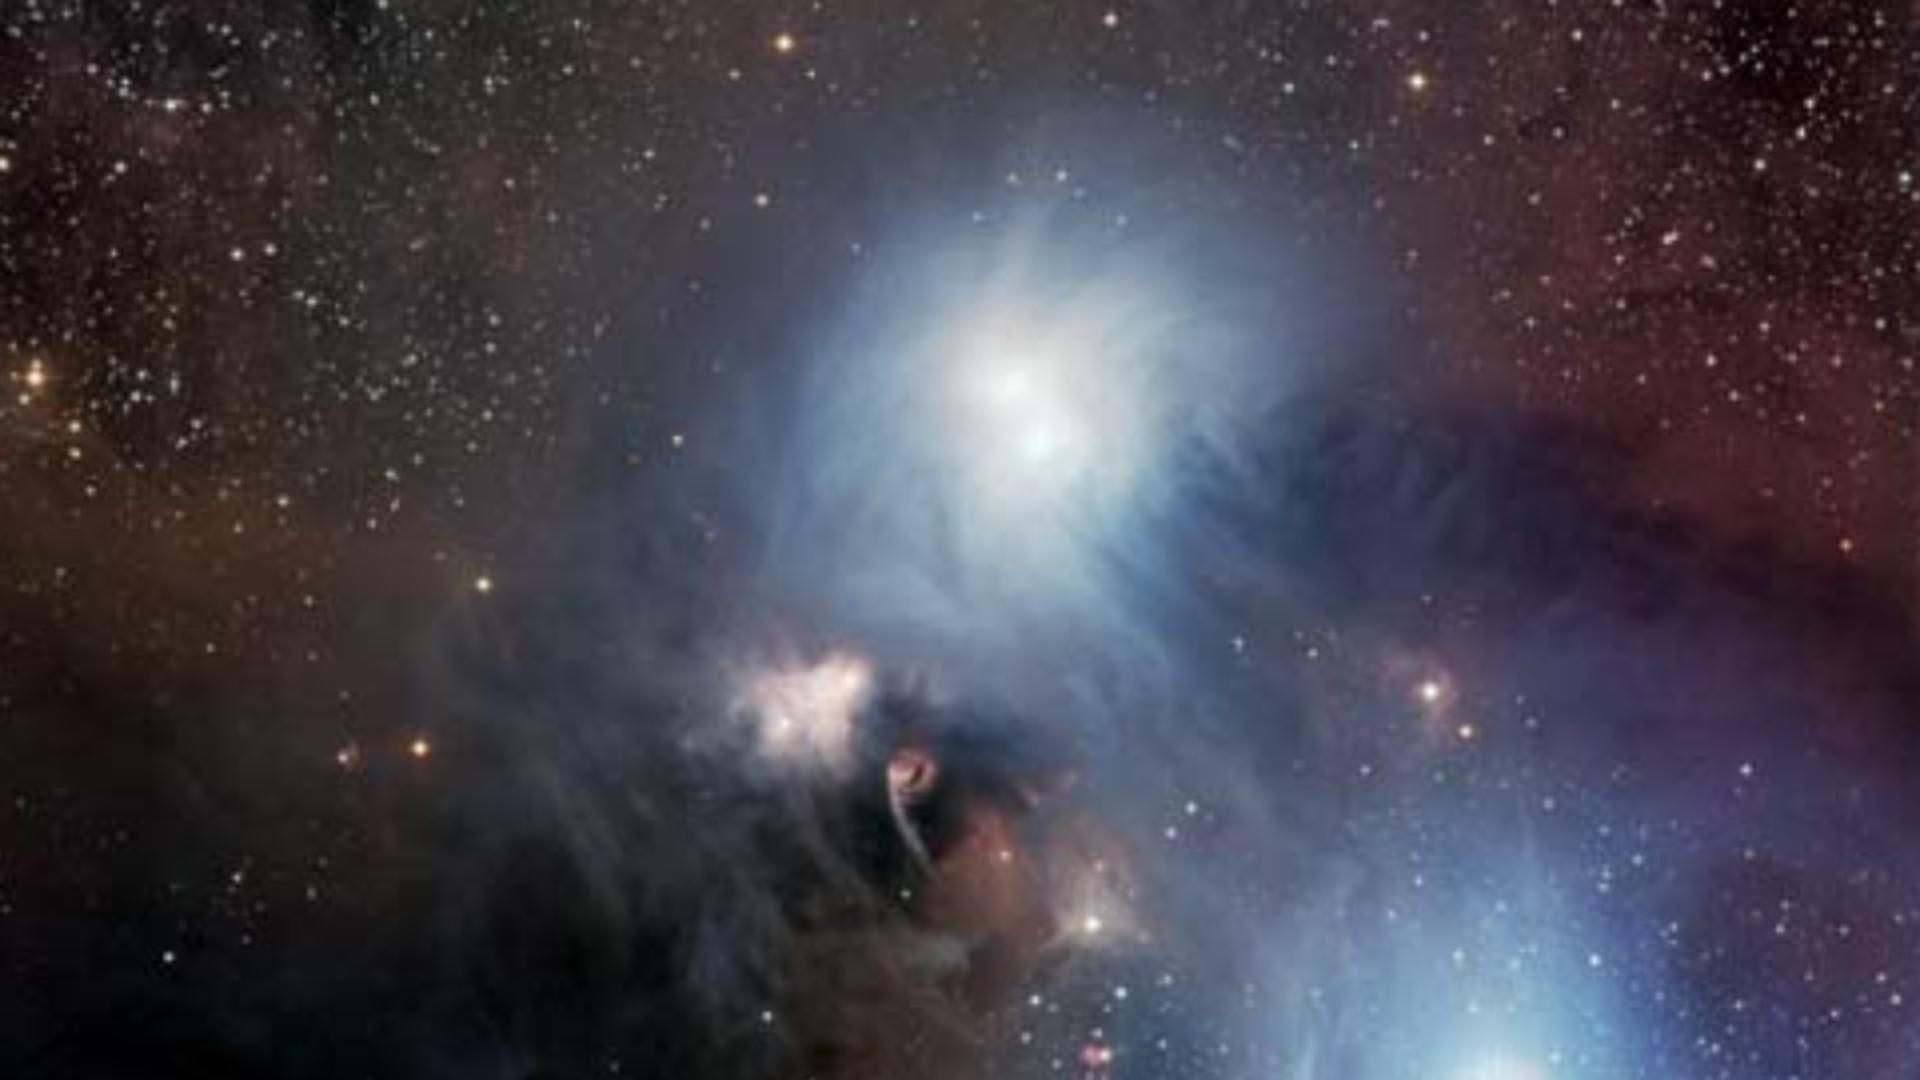 OMS a anunțat că va da nume de stele și constelații pentru tulpinile COVID-19